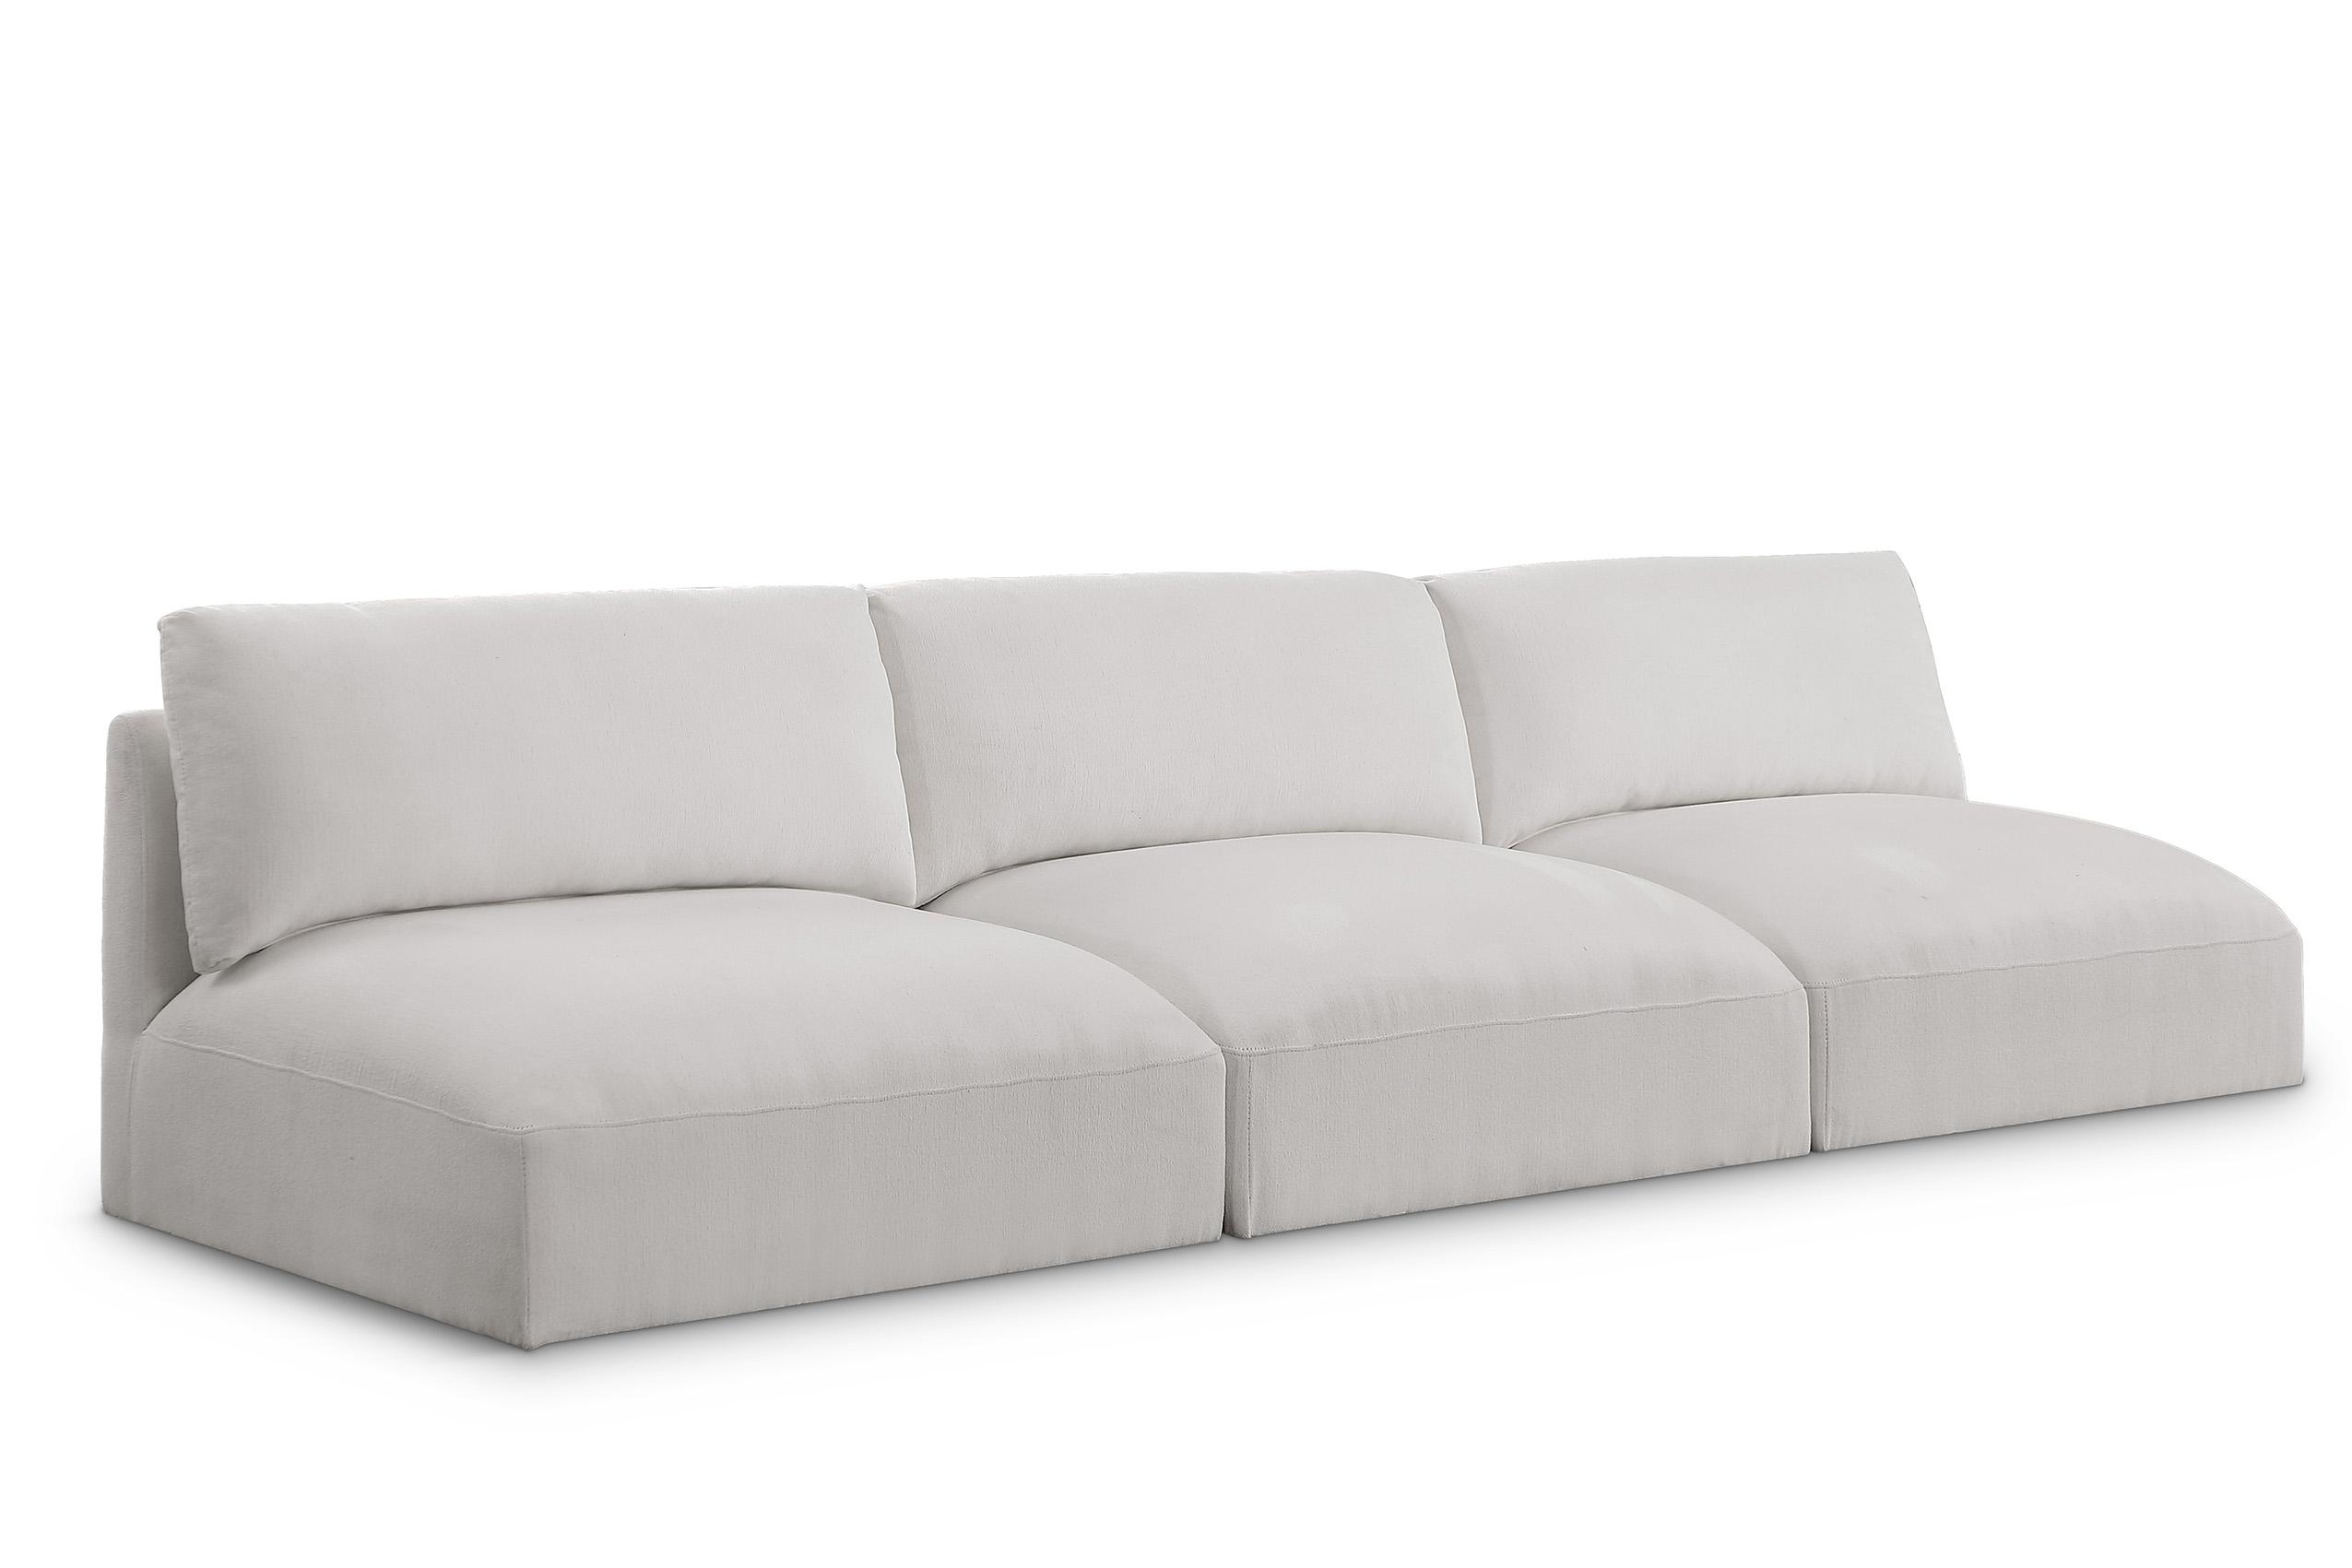 Contemporary, Modern Modular Sofa EASE 696Cream-S114A 696Cream-S114A in Cream Fabric